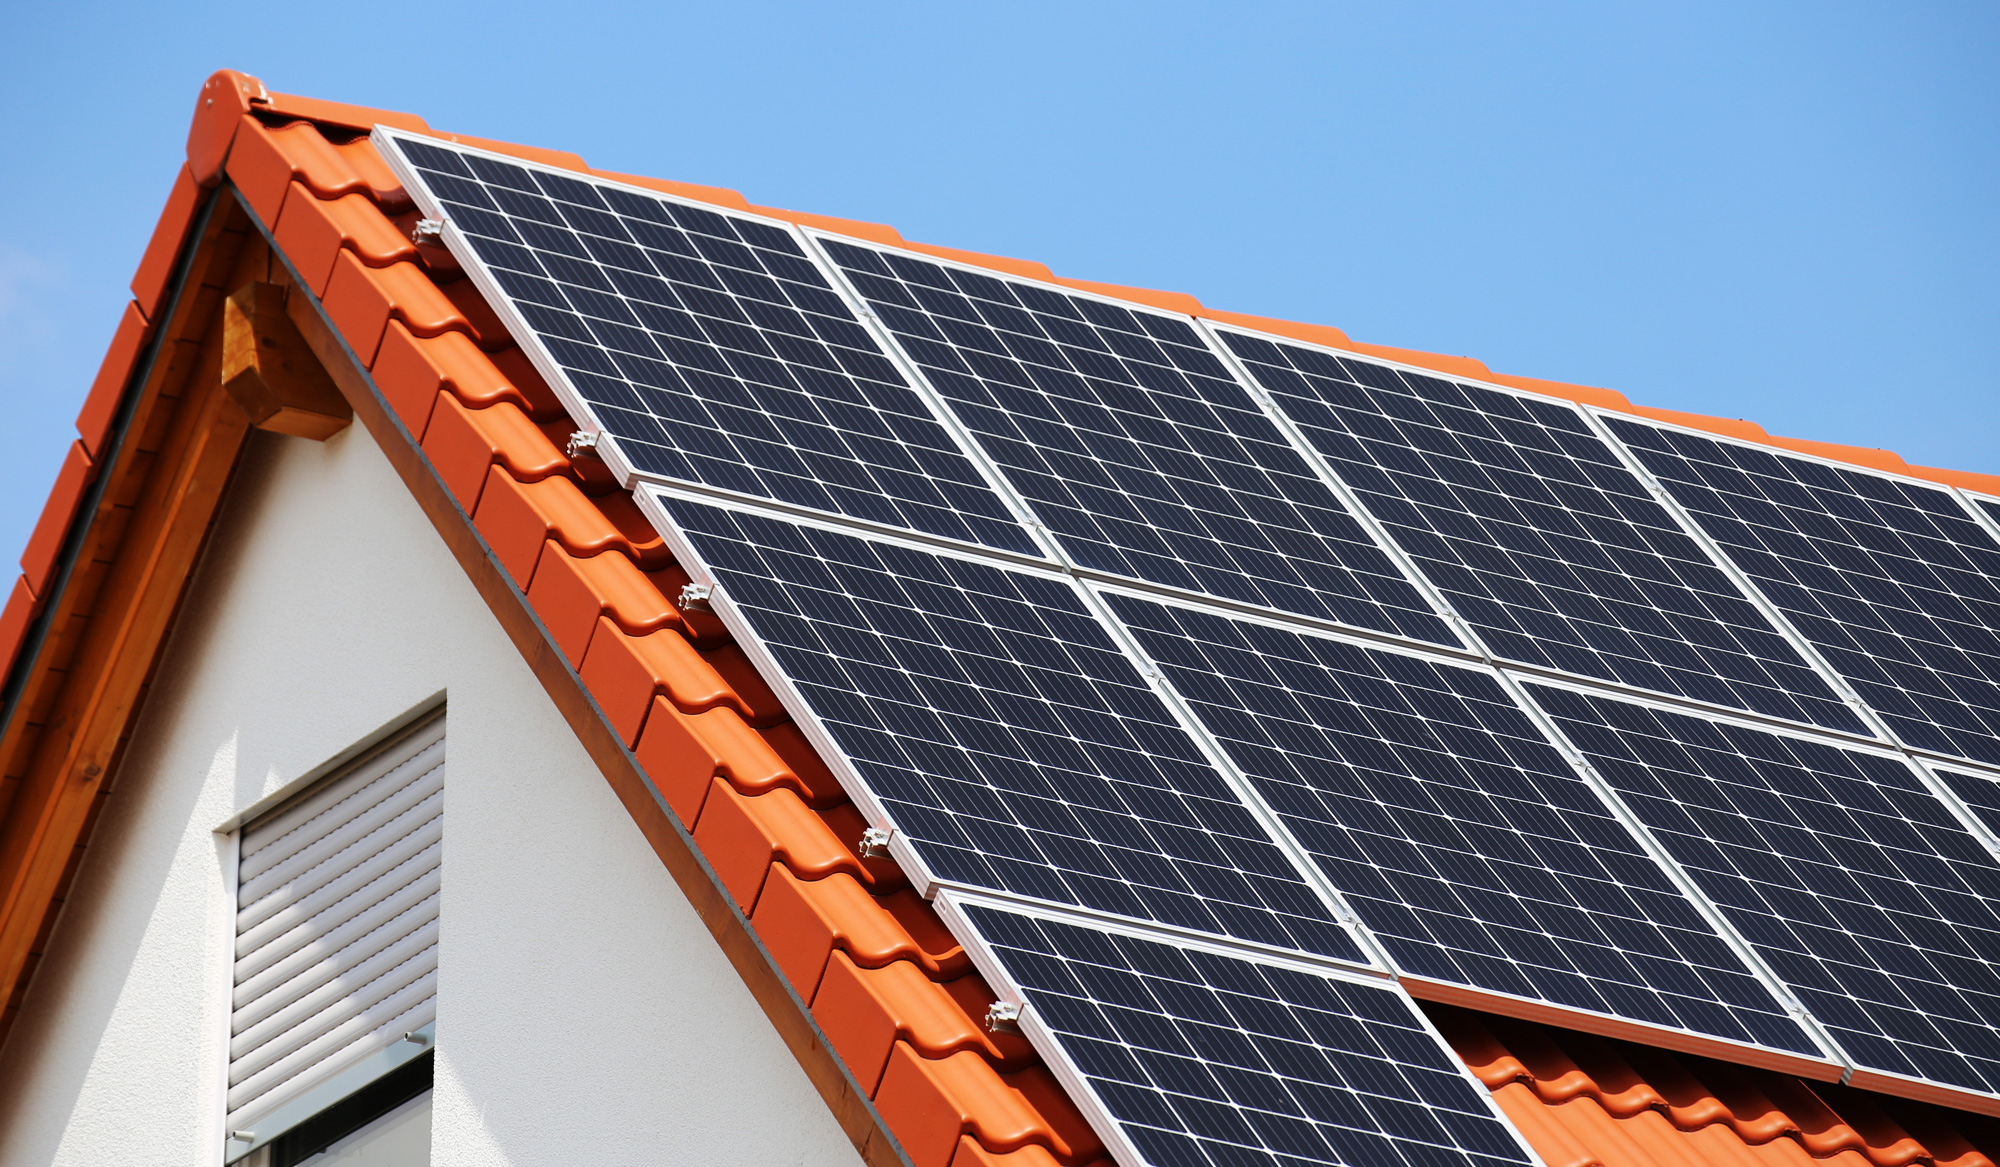 Solaranlagen – die Sonne gezielt nutzen, um Energie zu erzeugen